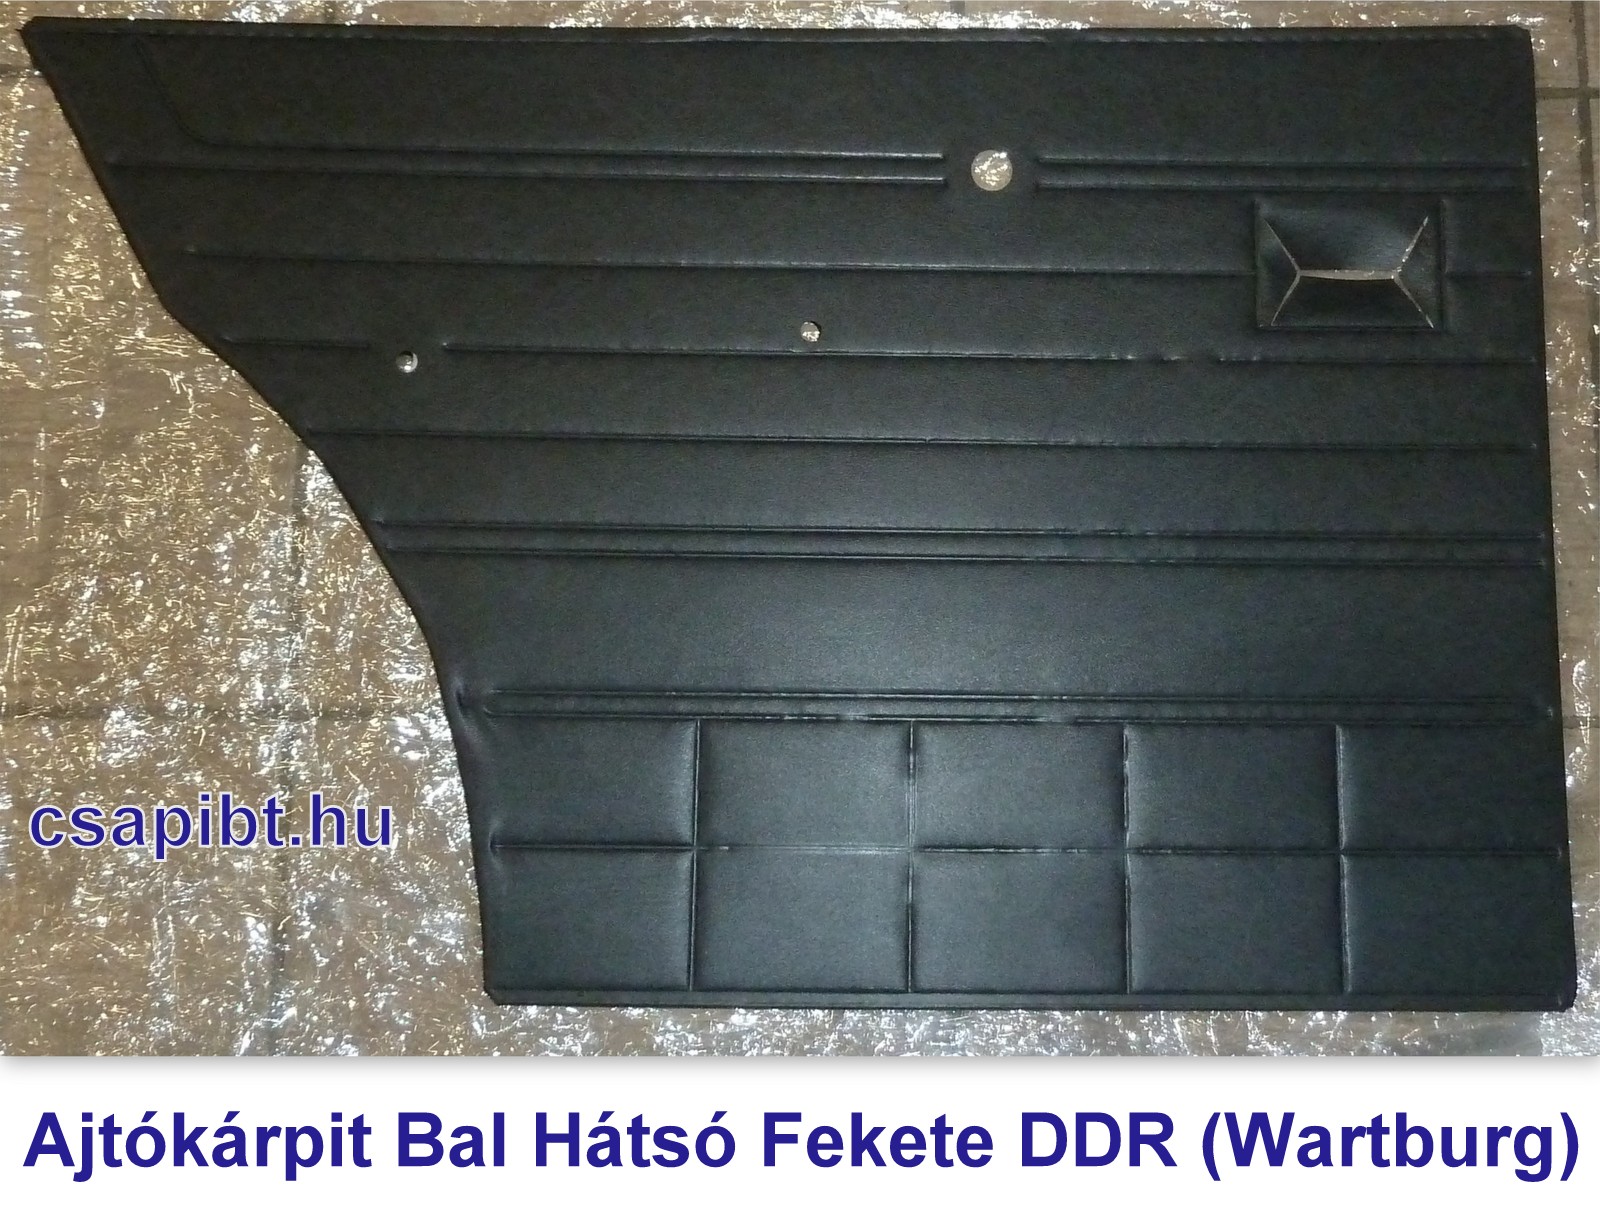 Ajtóborítás Bal hátsó fekete DDR (Wb)